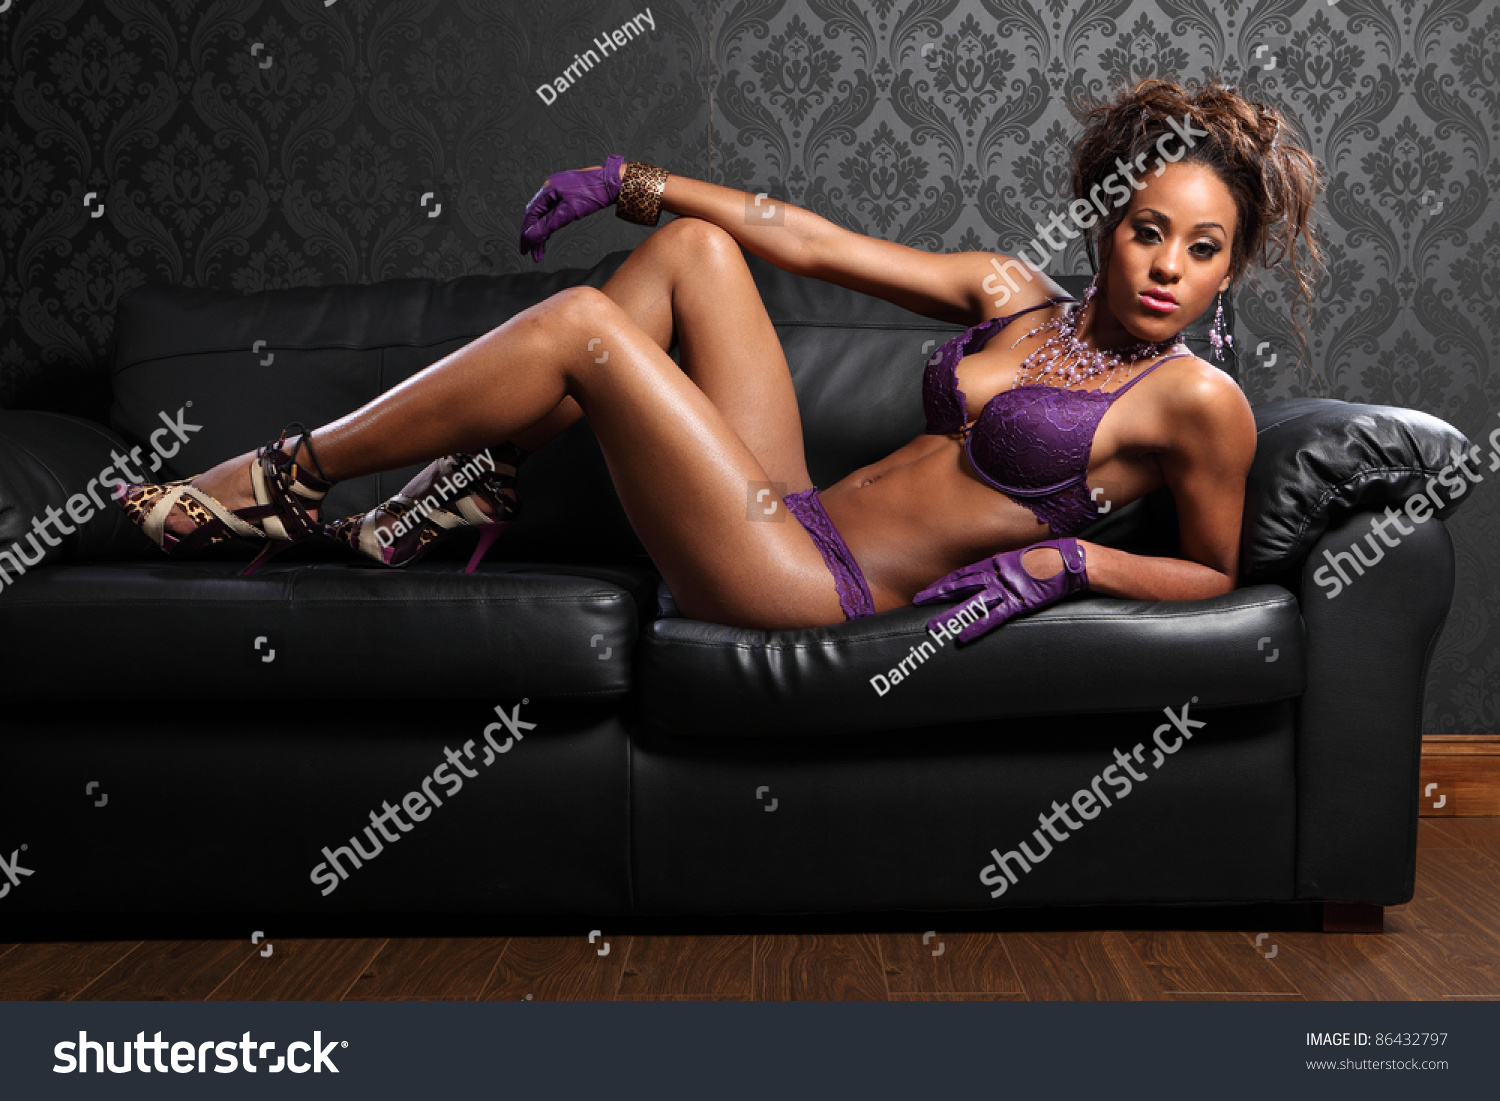 black girls sex photos for full length